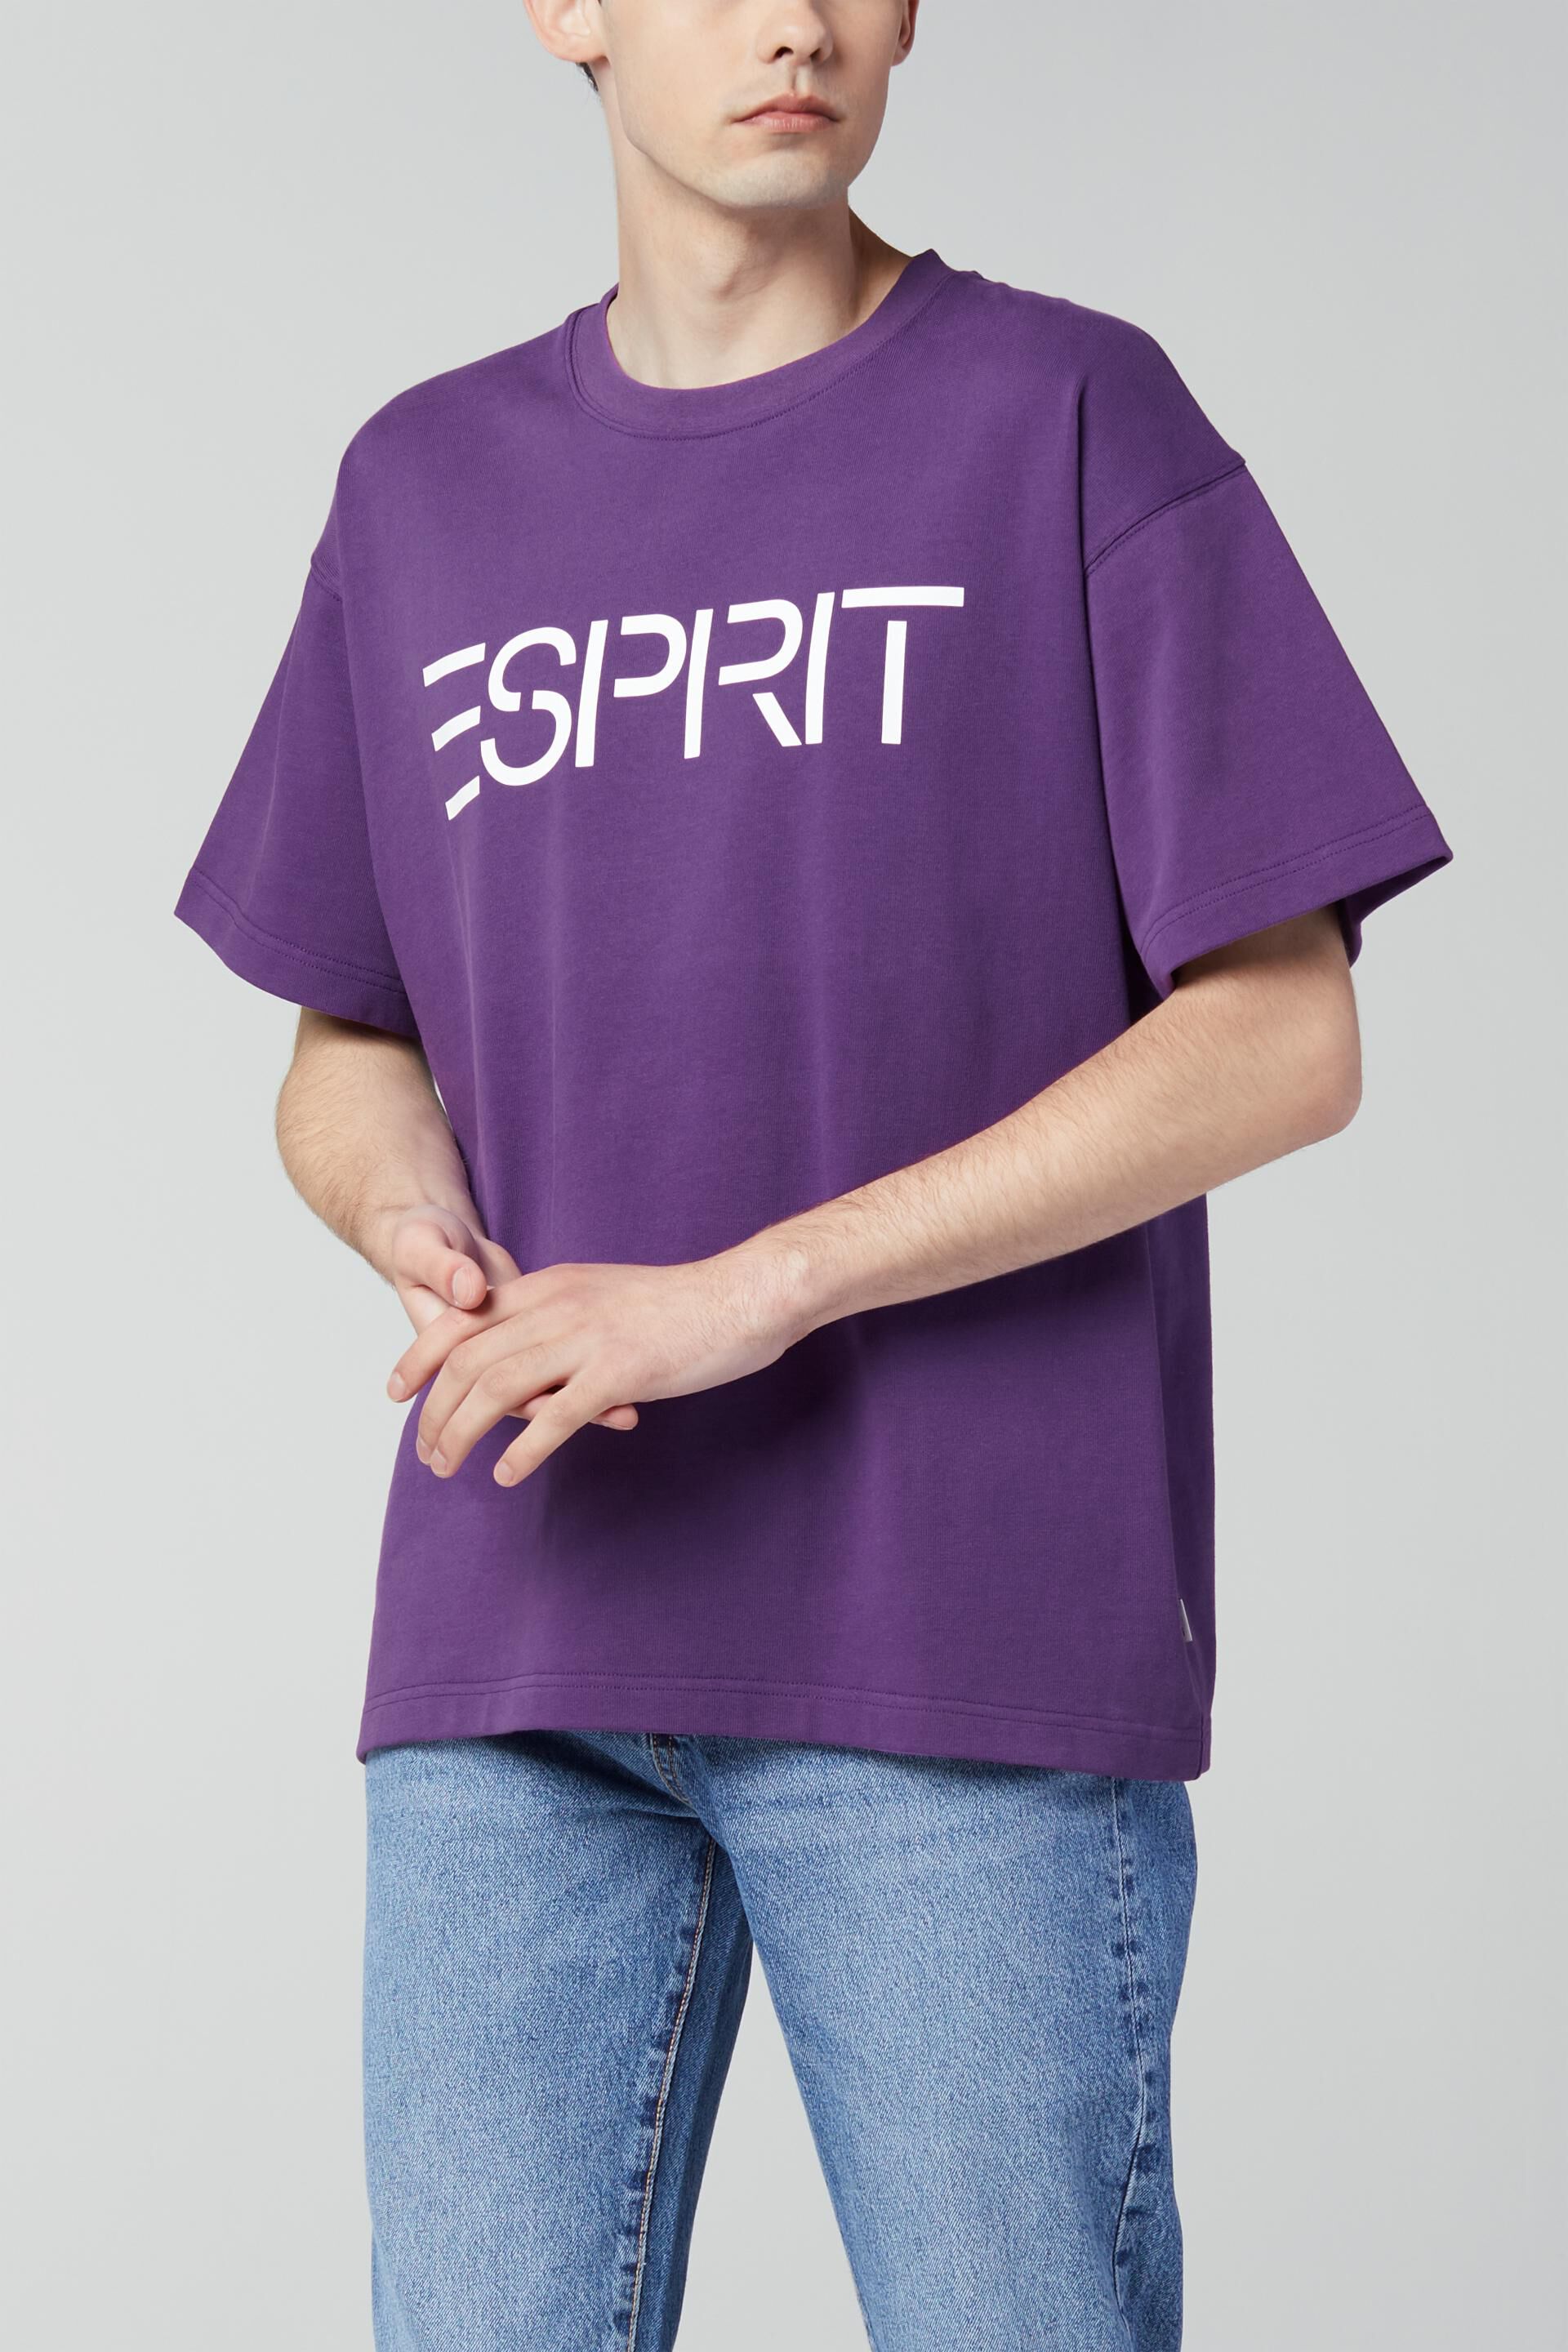 ESPRIT Girls T-Shirt Ss STRI